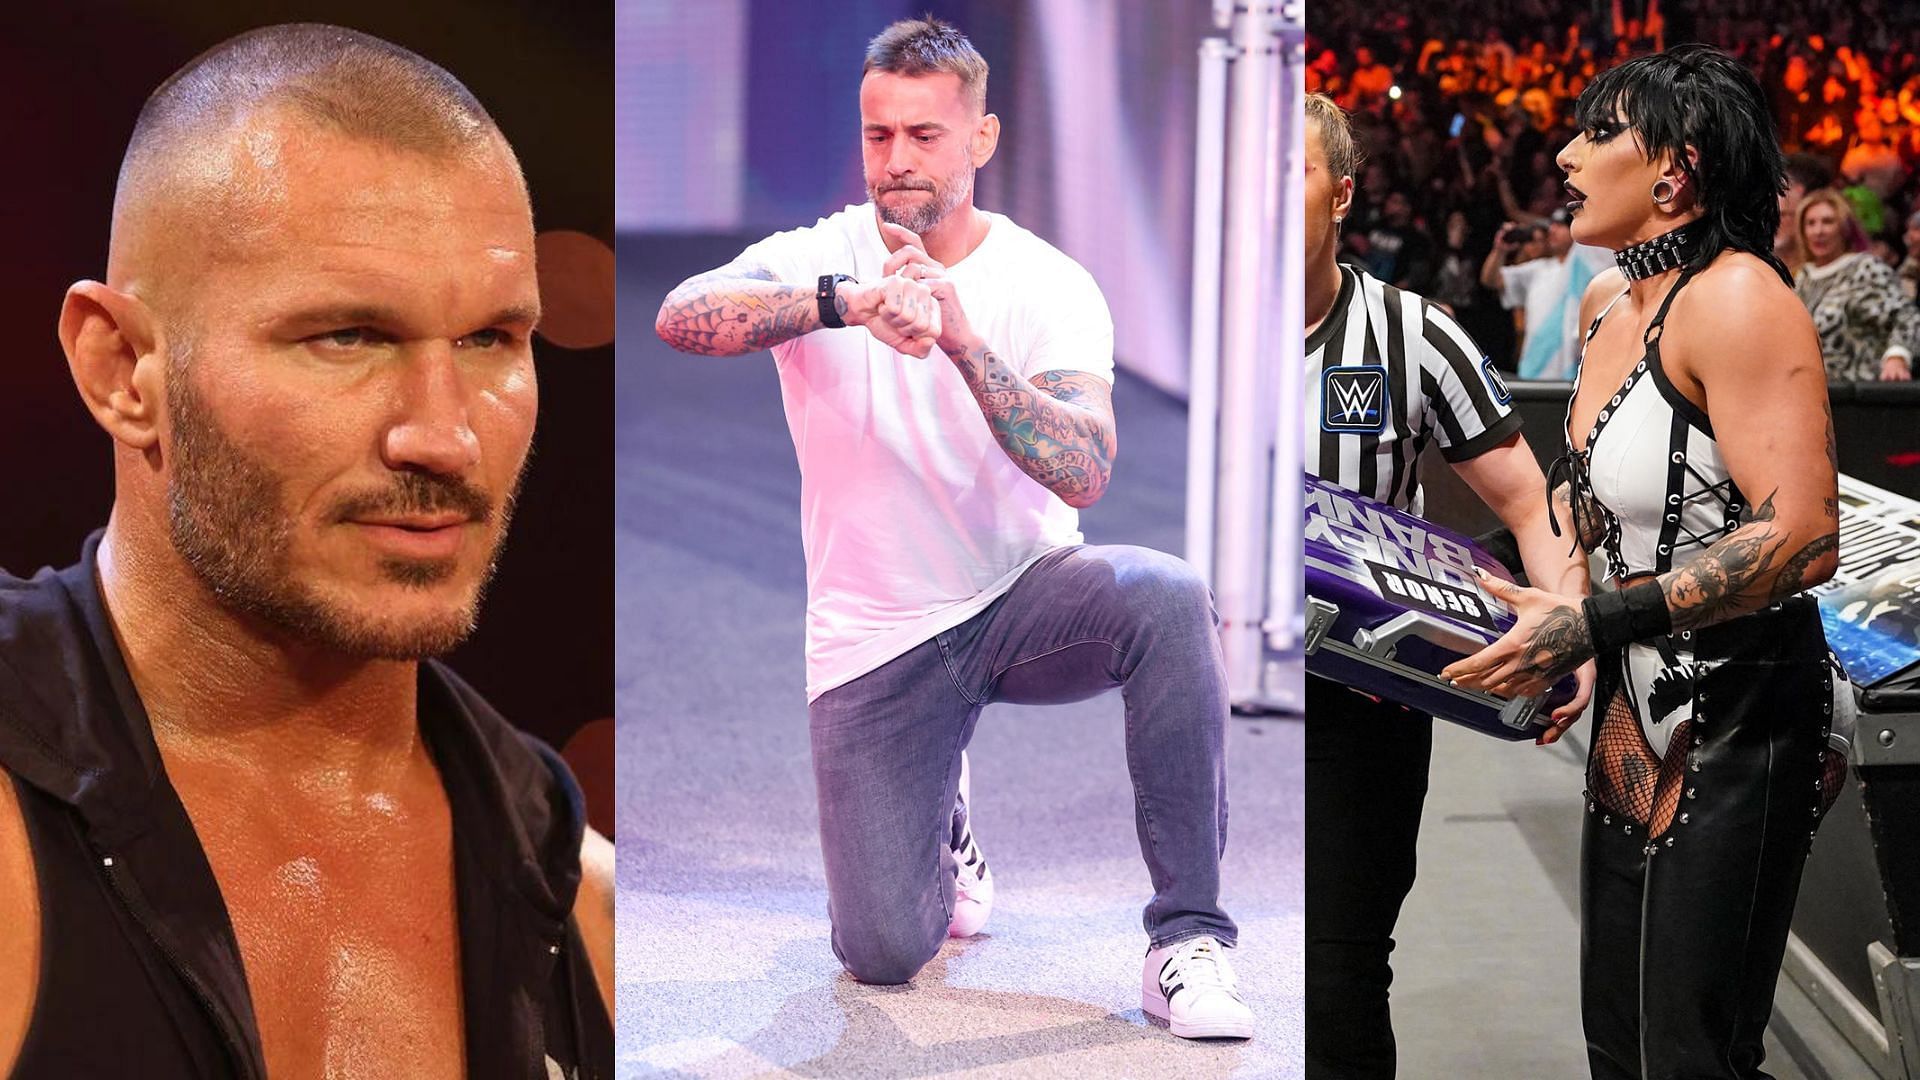 WWE Survivor Series delivered on the fans